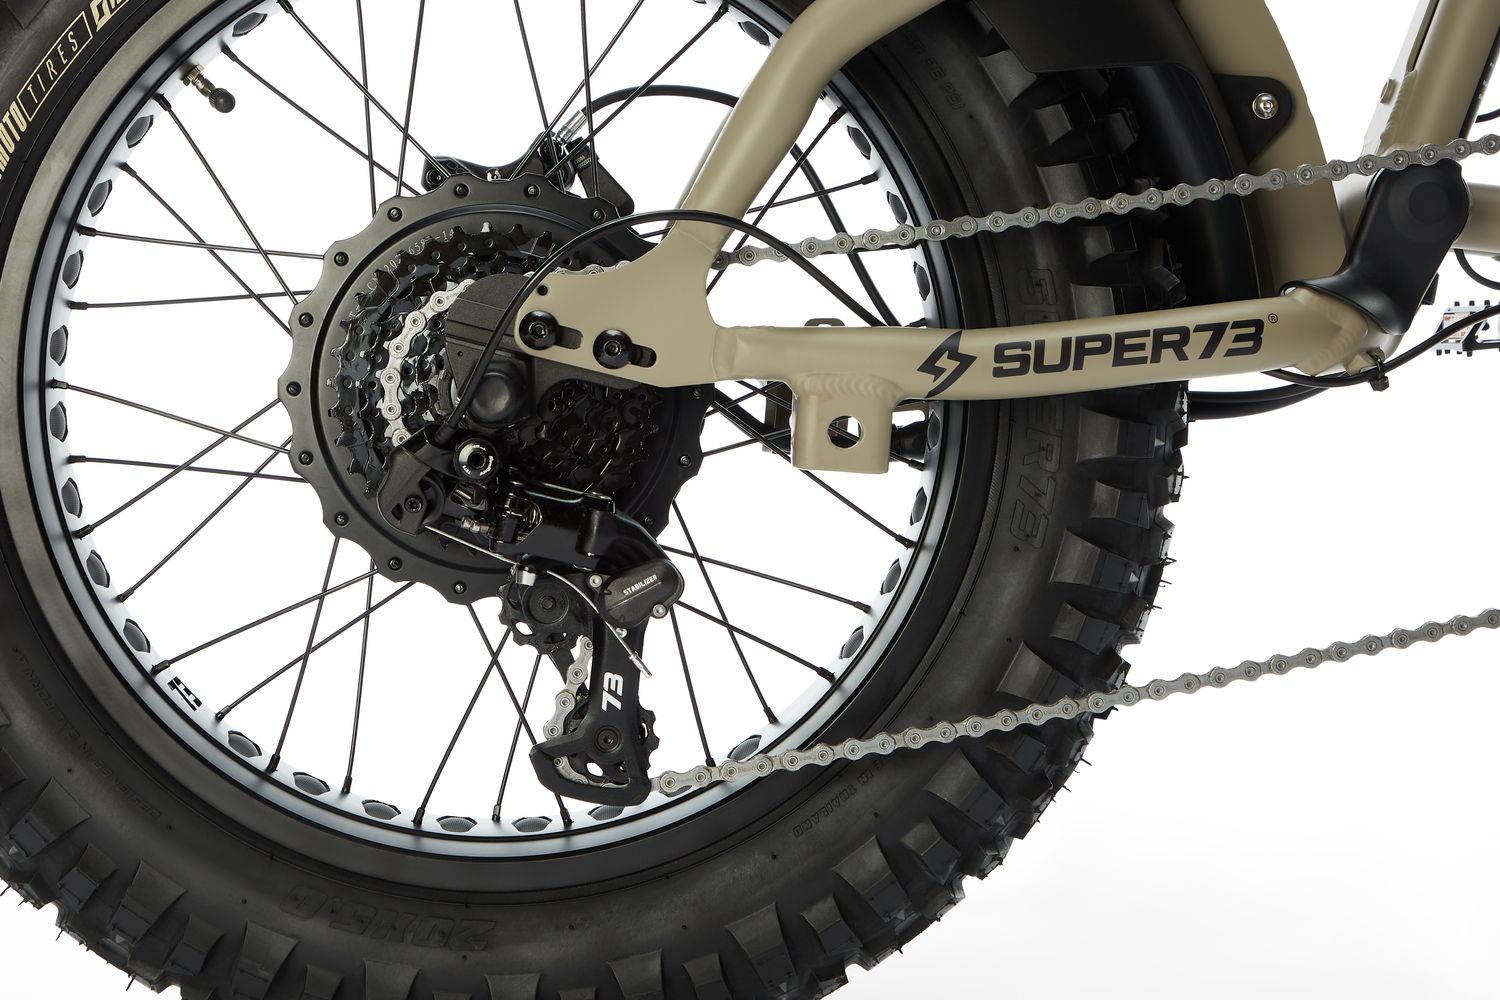 Super73-RX Mojave Dark Earth back tire.